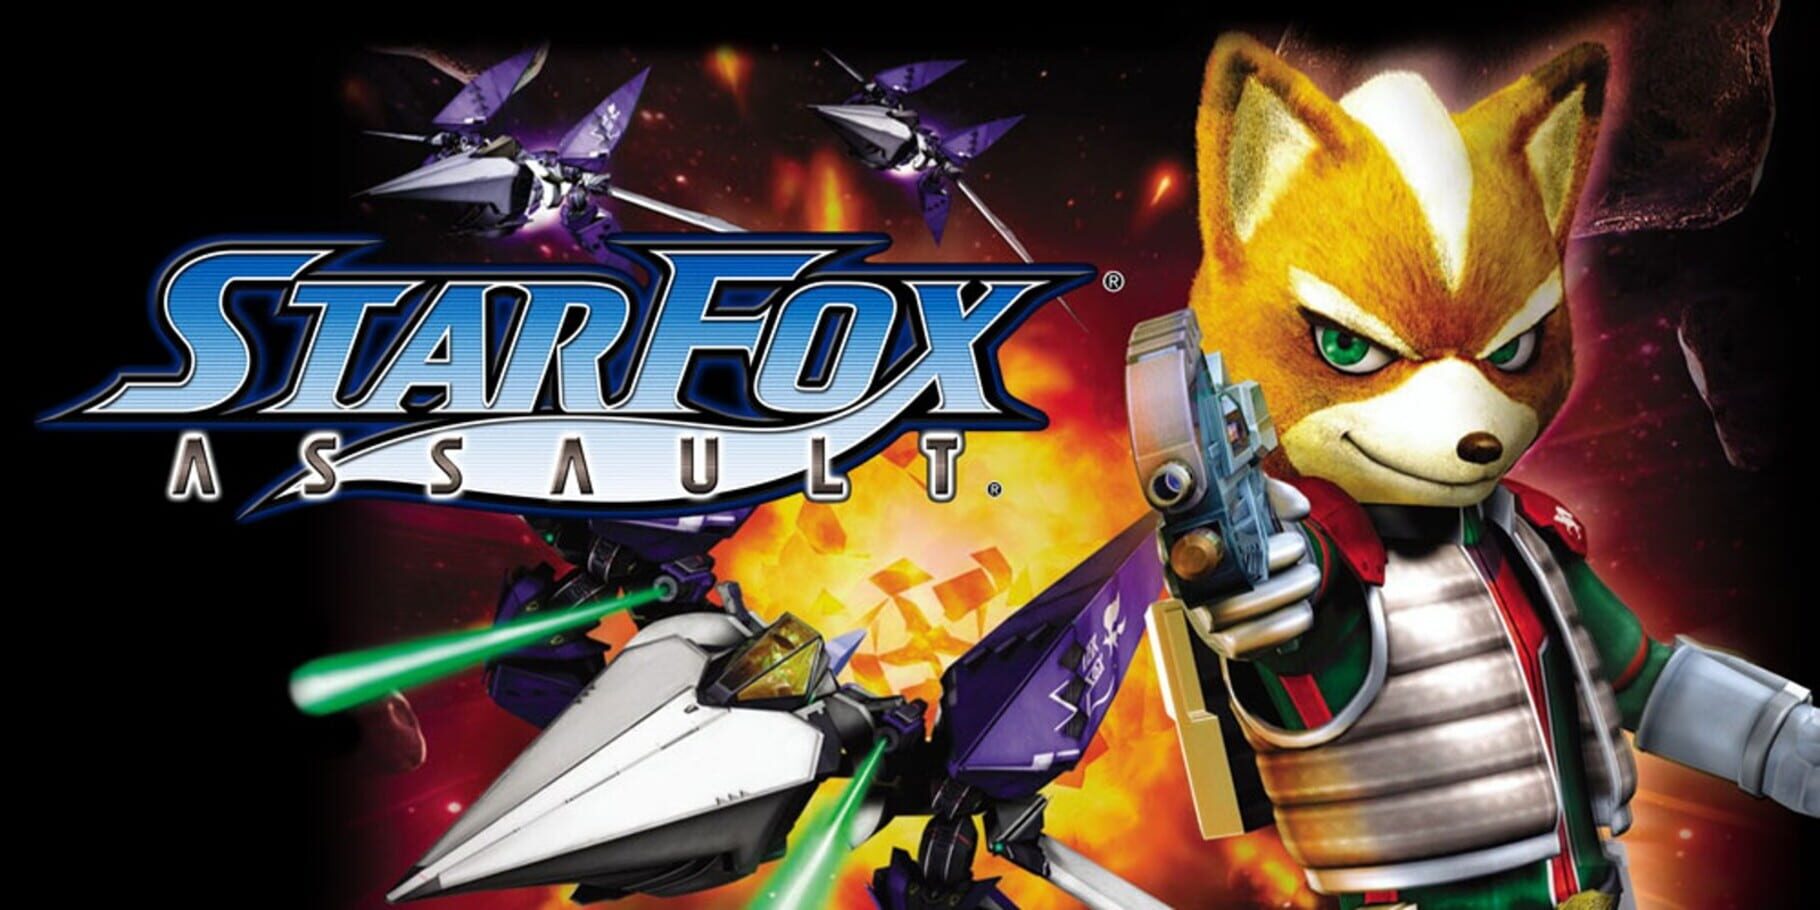 Arte - Star Fox: Assault